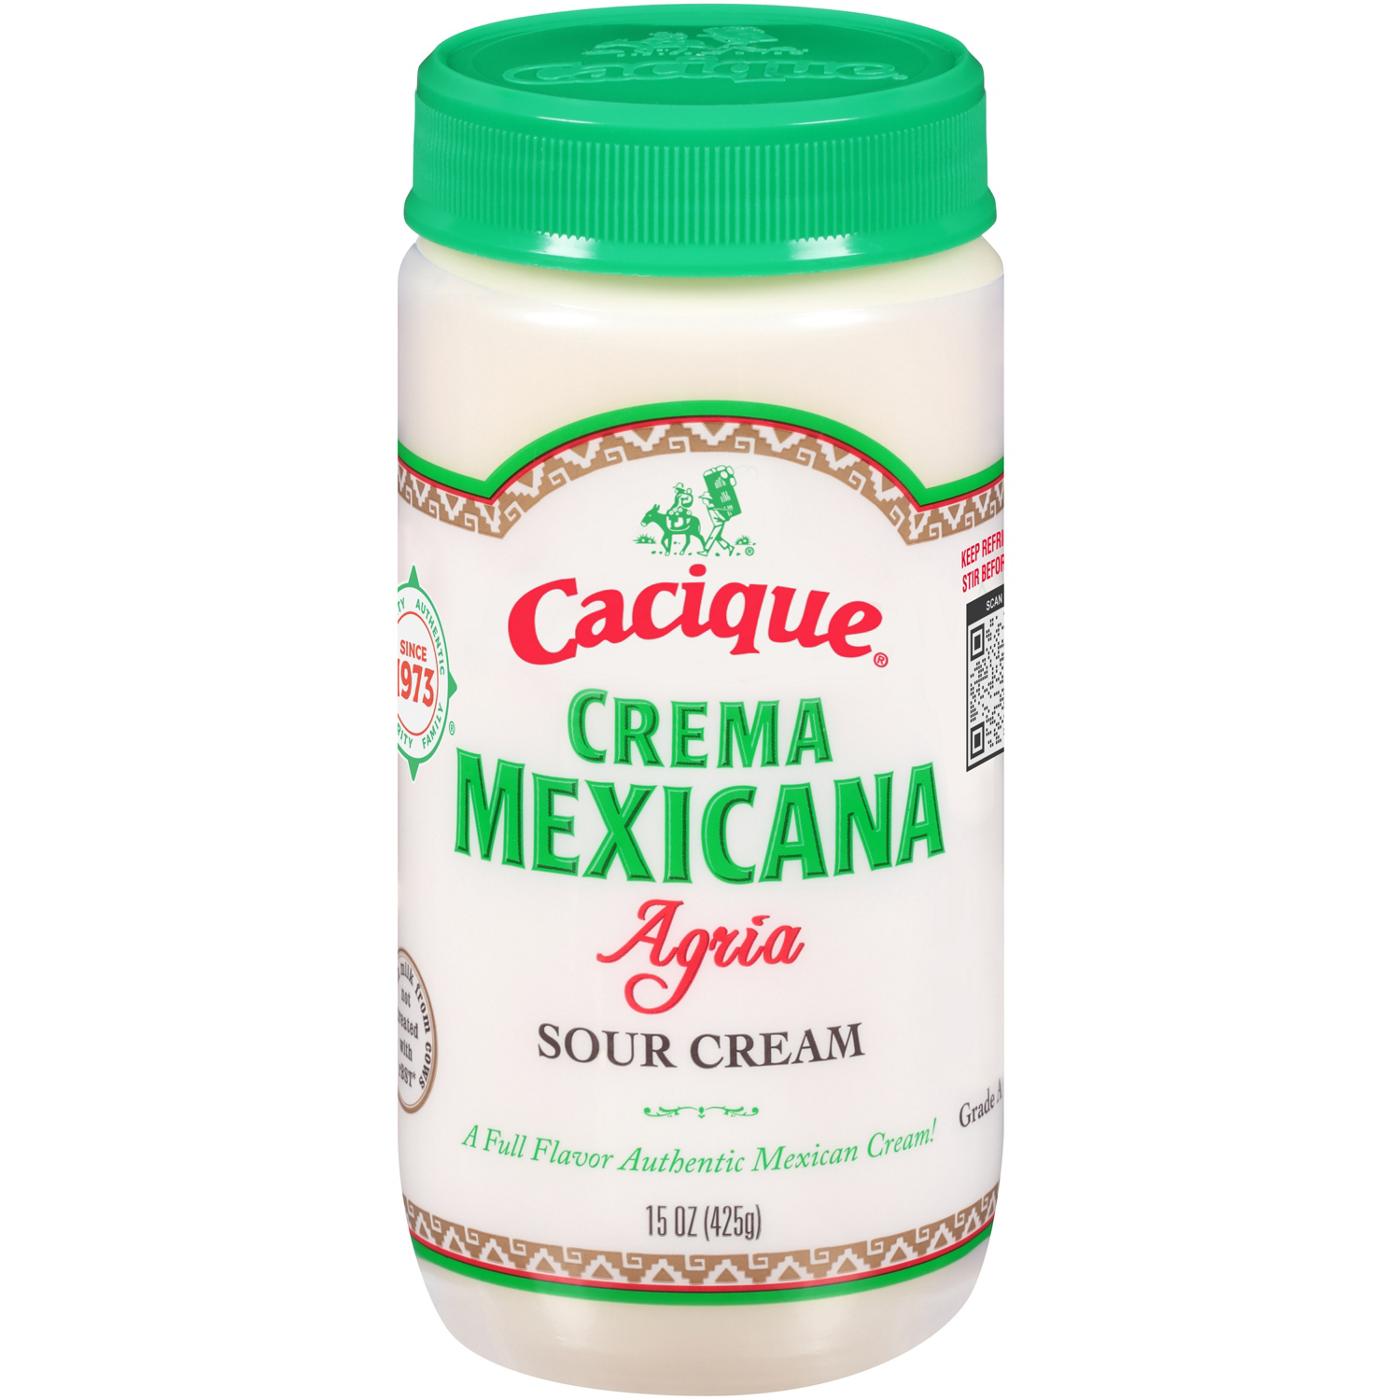 Cacique Crema Mexicana Agria Sour Cream; image 1 of 2